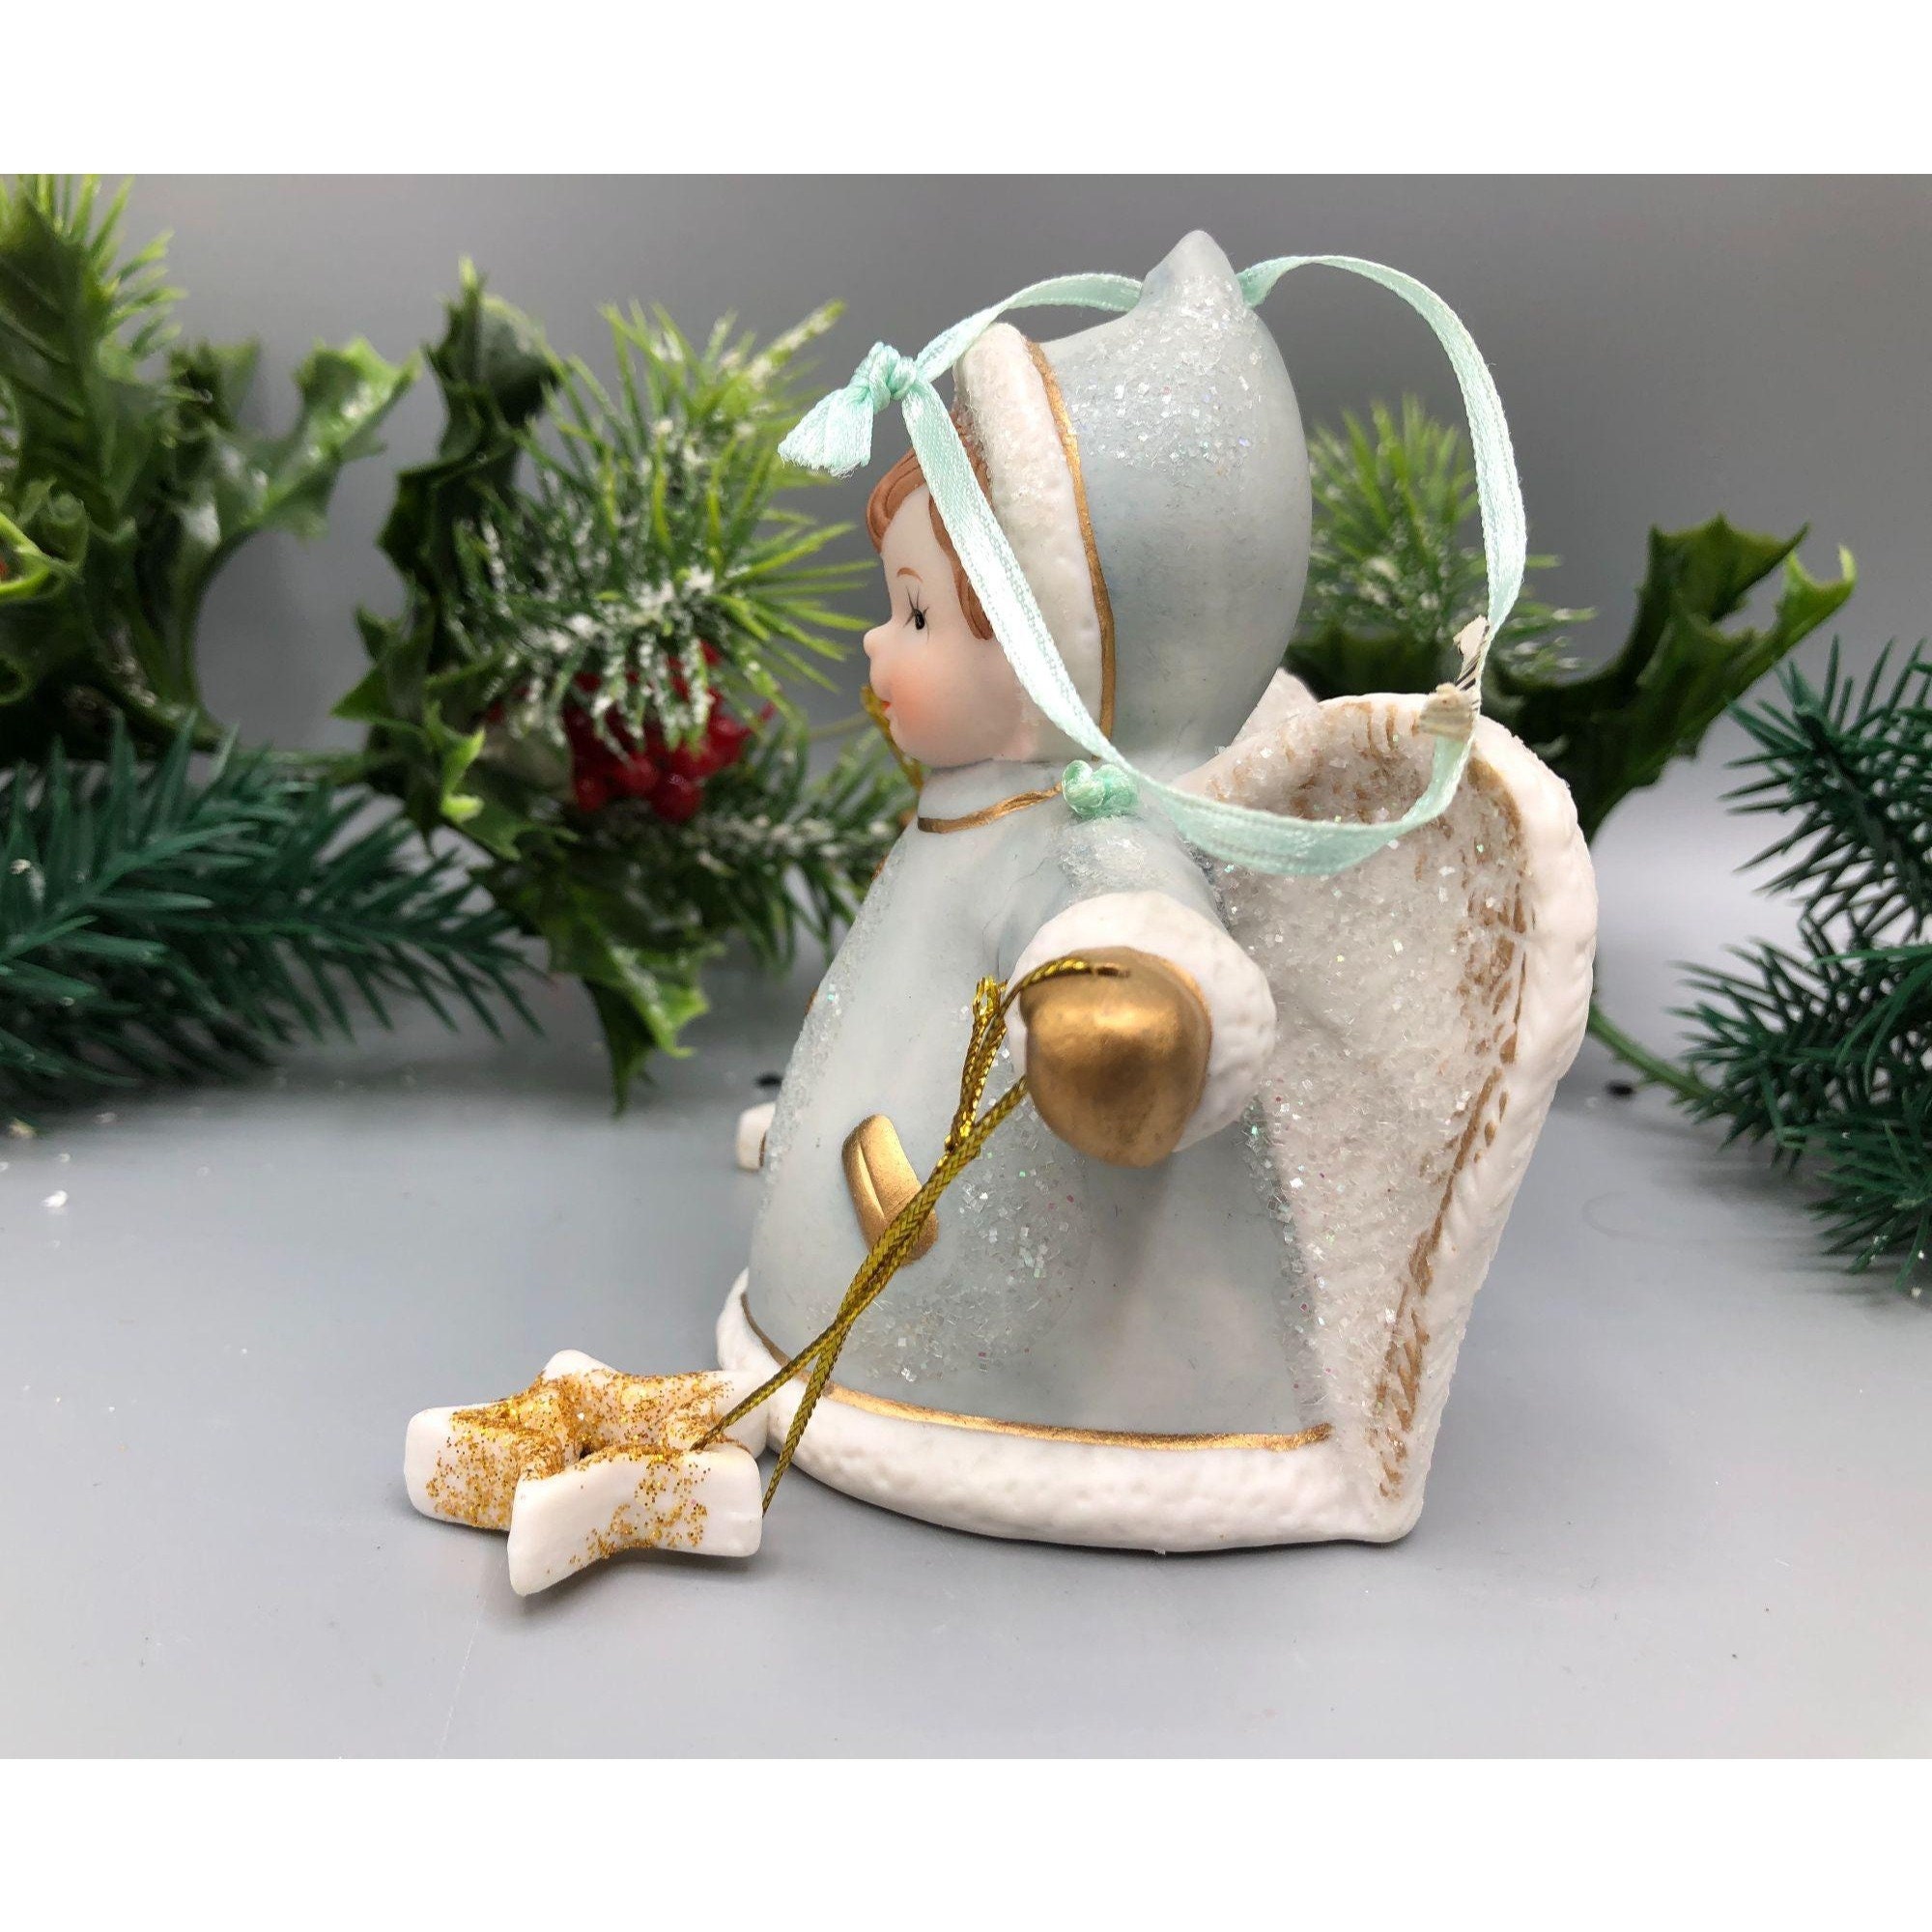 Vintage Angel GIrl Bell Porcelain Christmas Tree Ornament Blue White Gold New